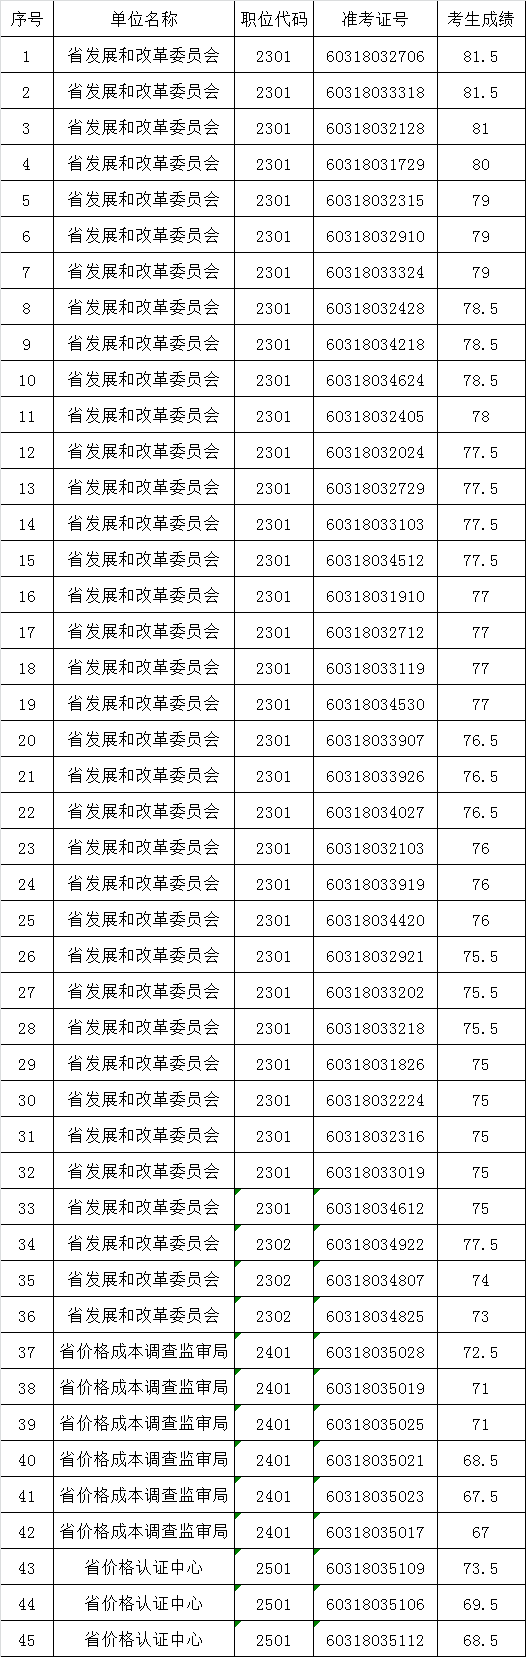 河南省发展和改革委员会2016年公务员遴选面试人员名单.png